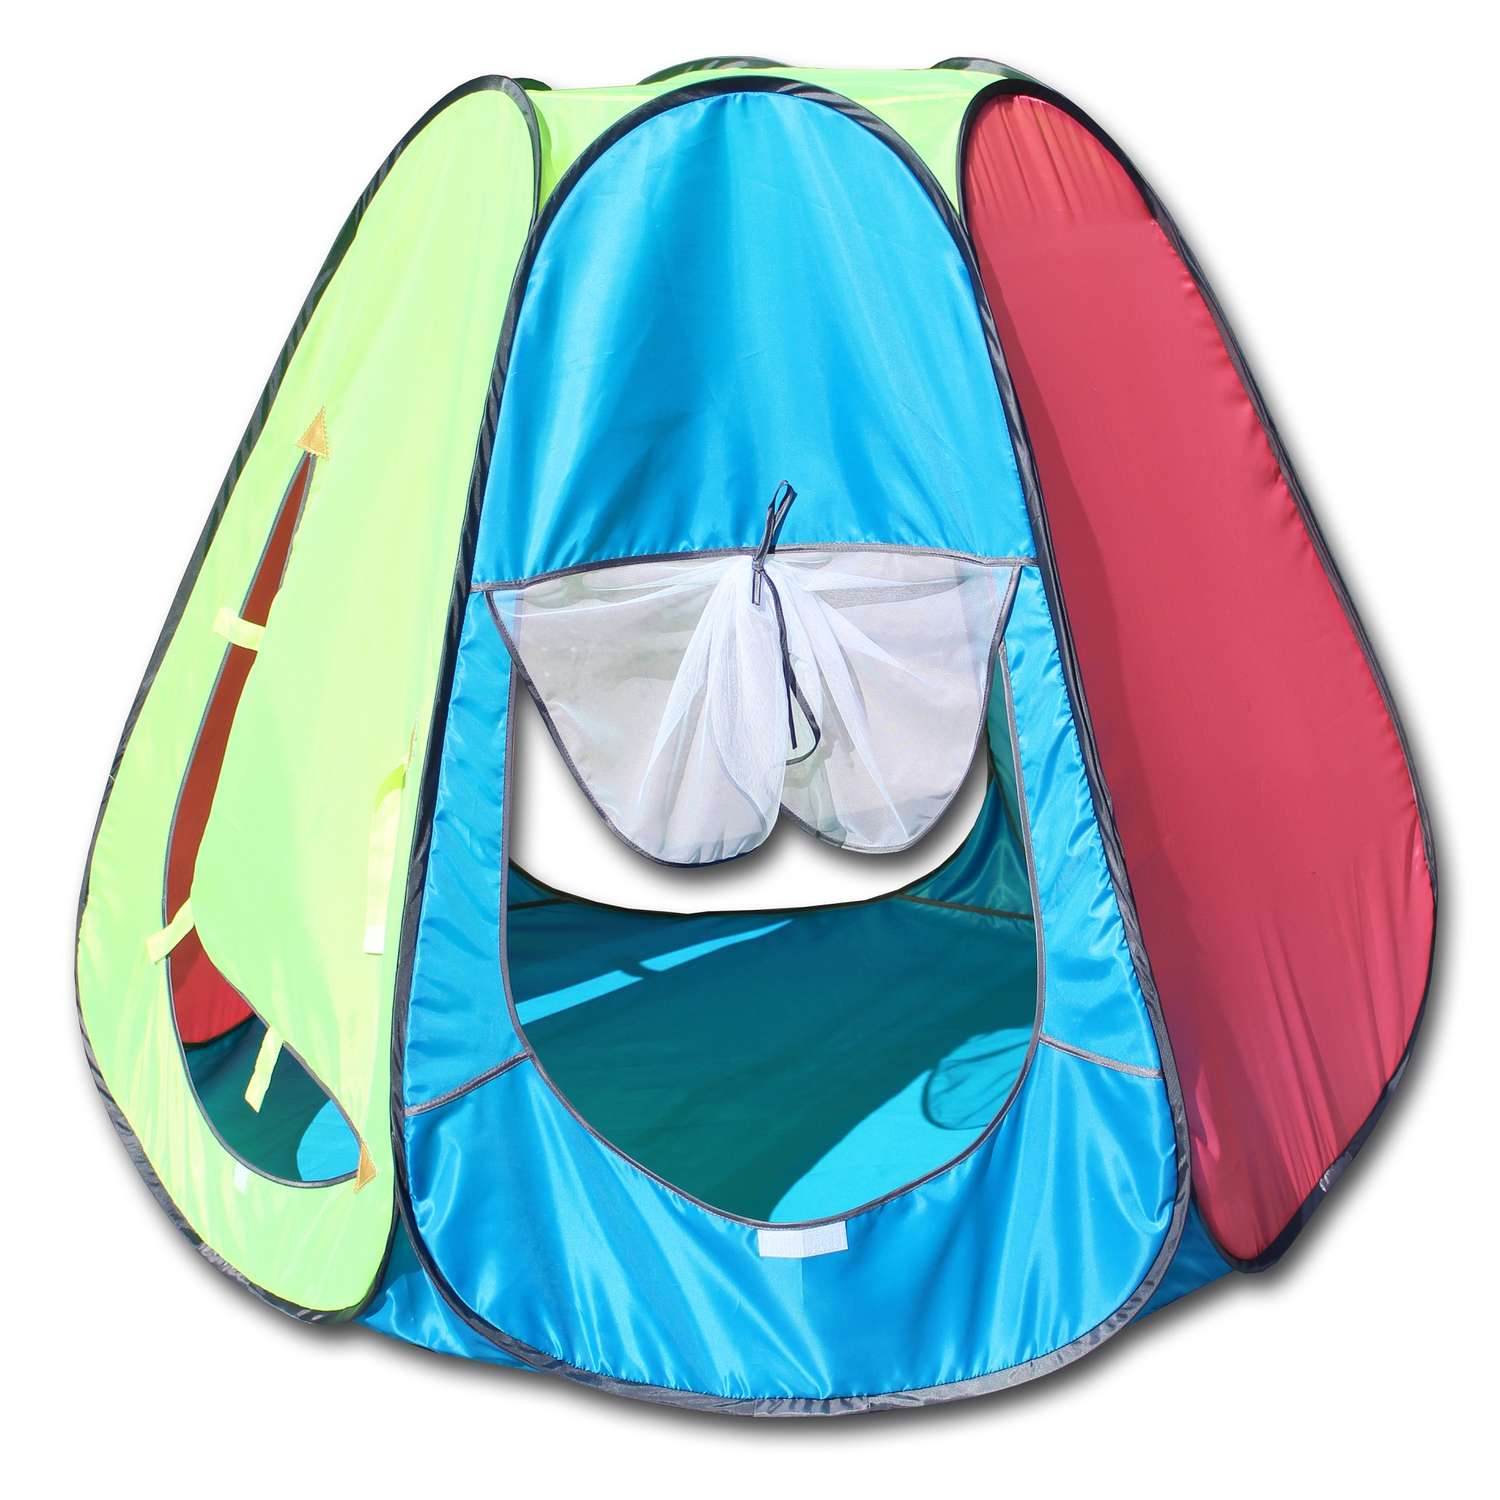 Игровая палатка Belon familia шестигранная цвет голубой яркий/коралл/лимон/бирюза 120х120х110 см - фото 1